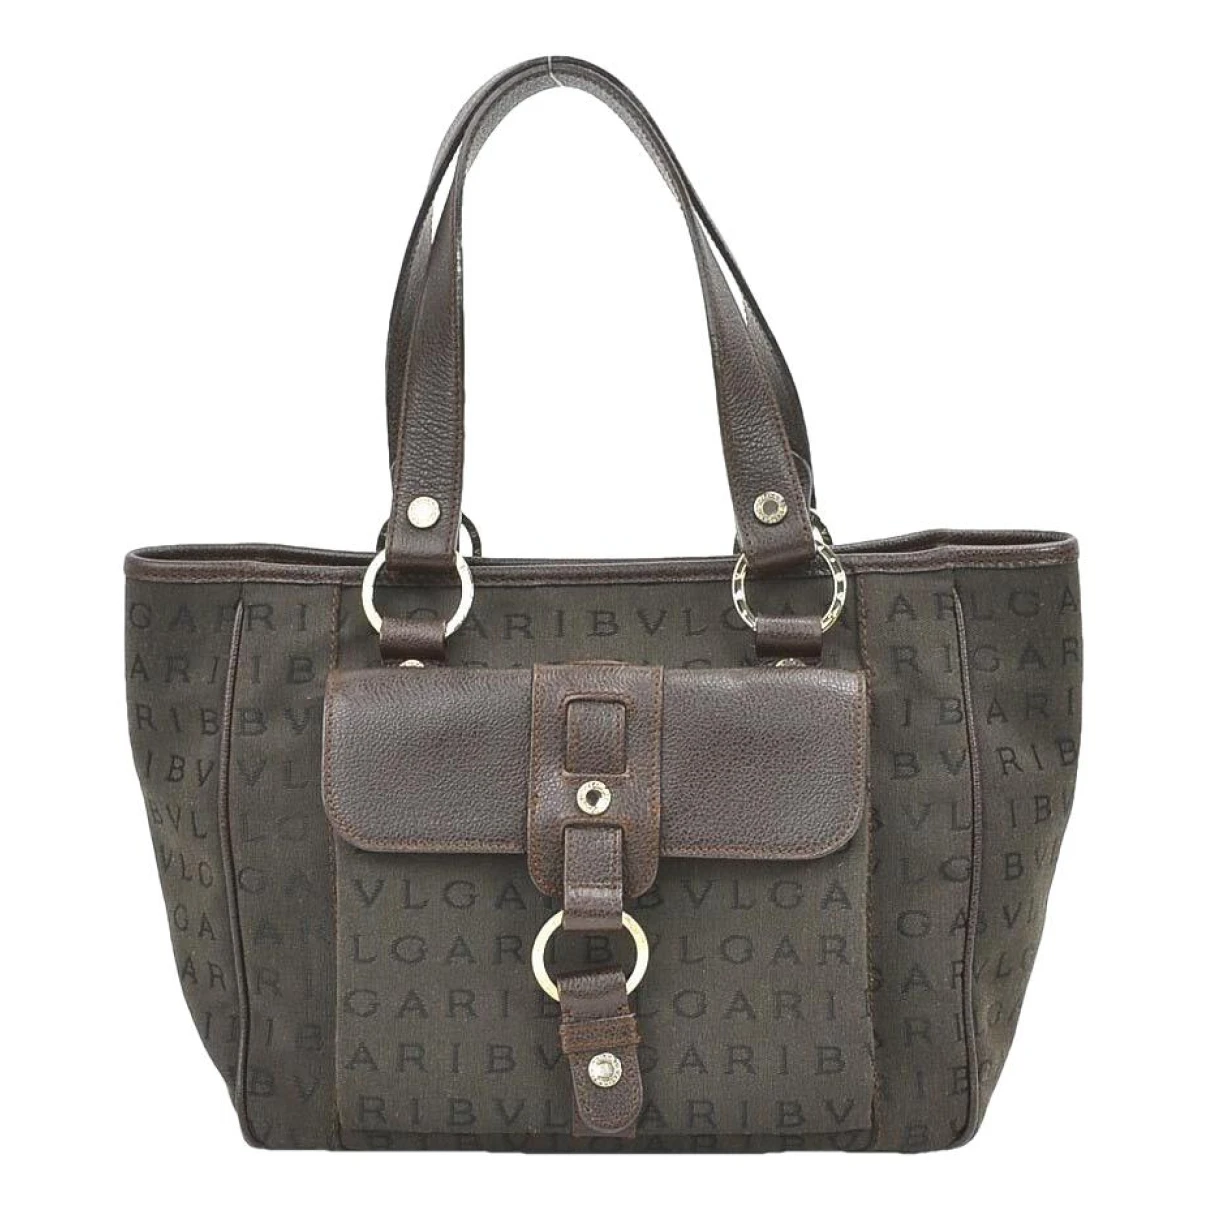 Pre-owned Bvlgari Bulgari Leather Handbag In Brown